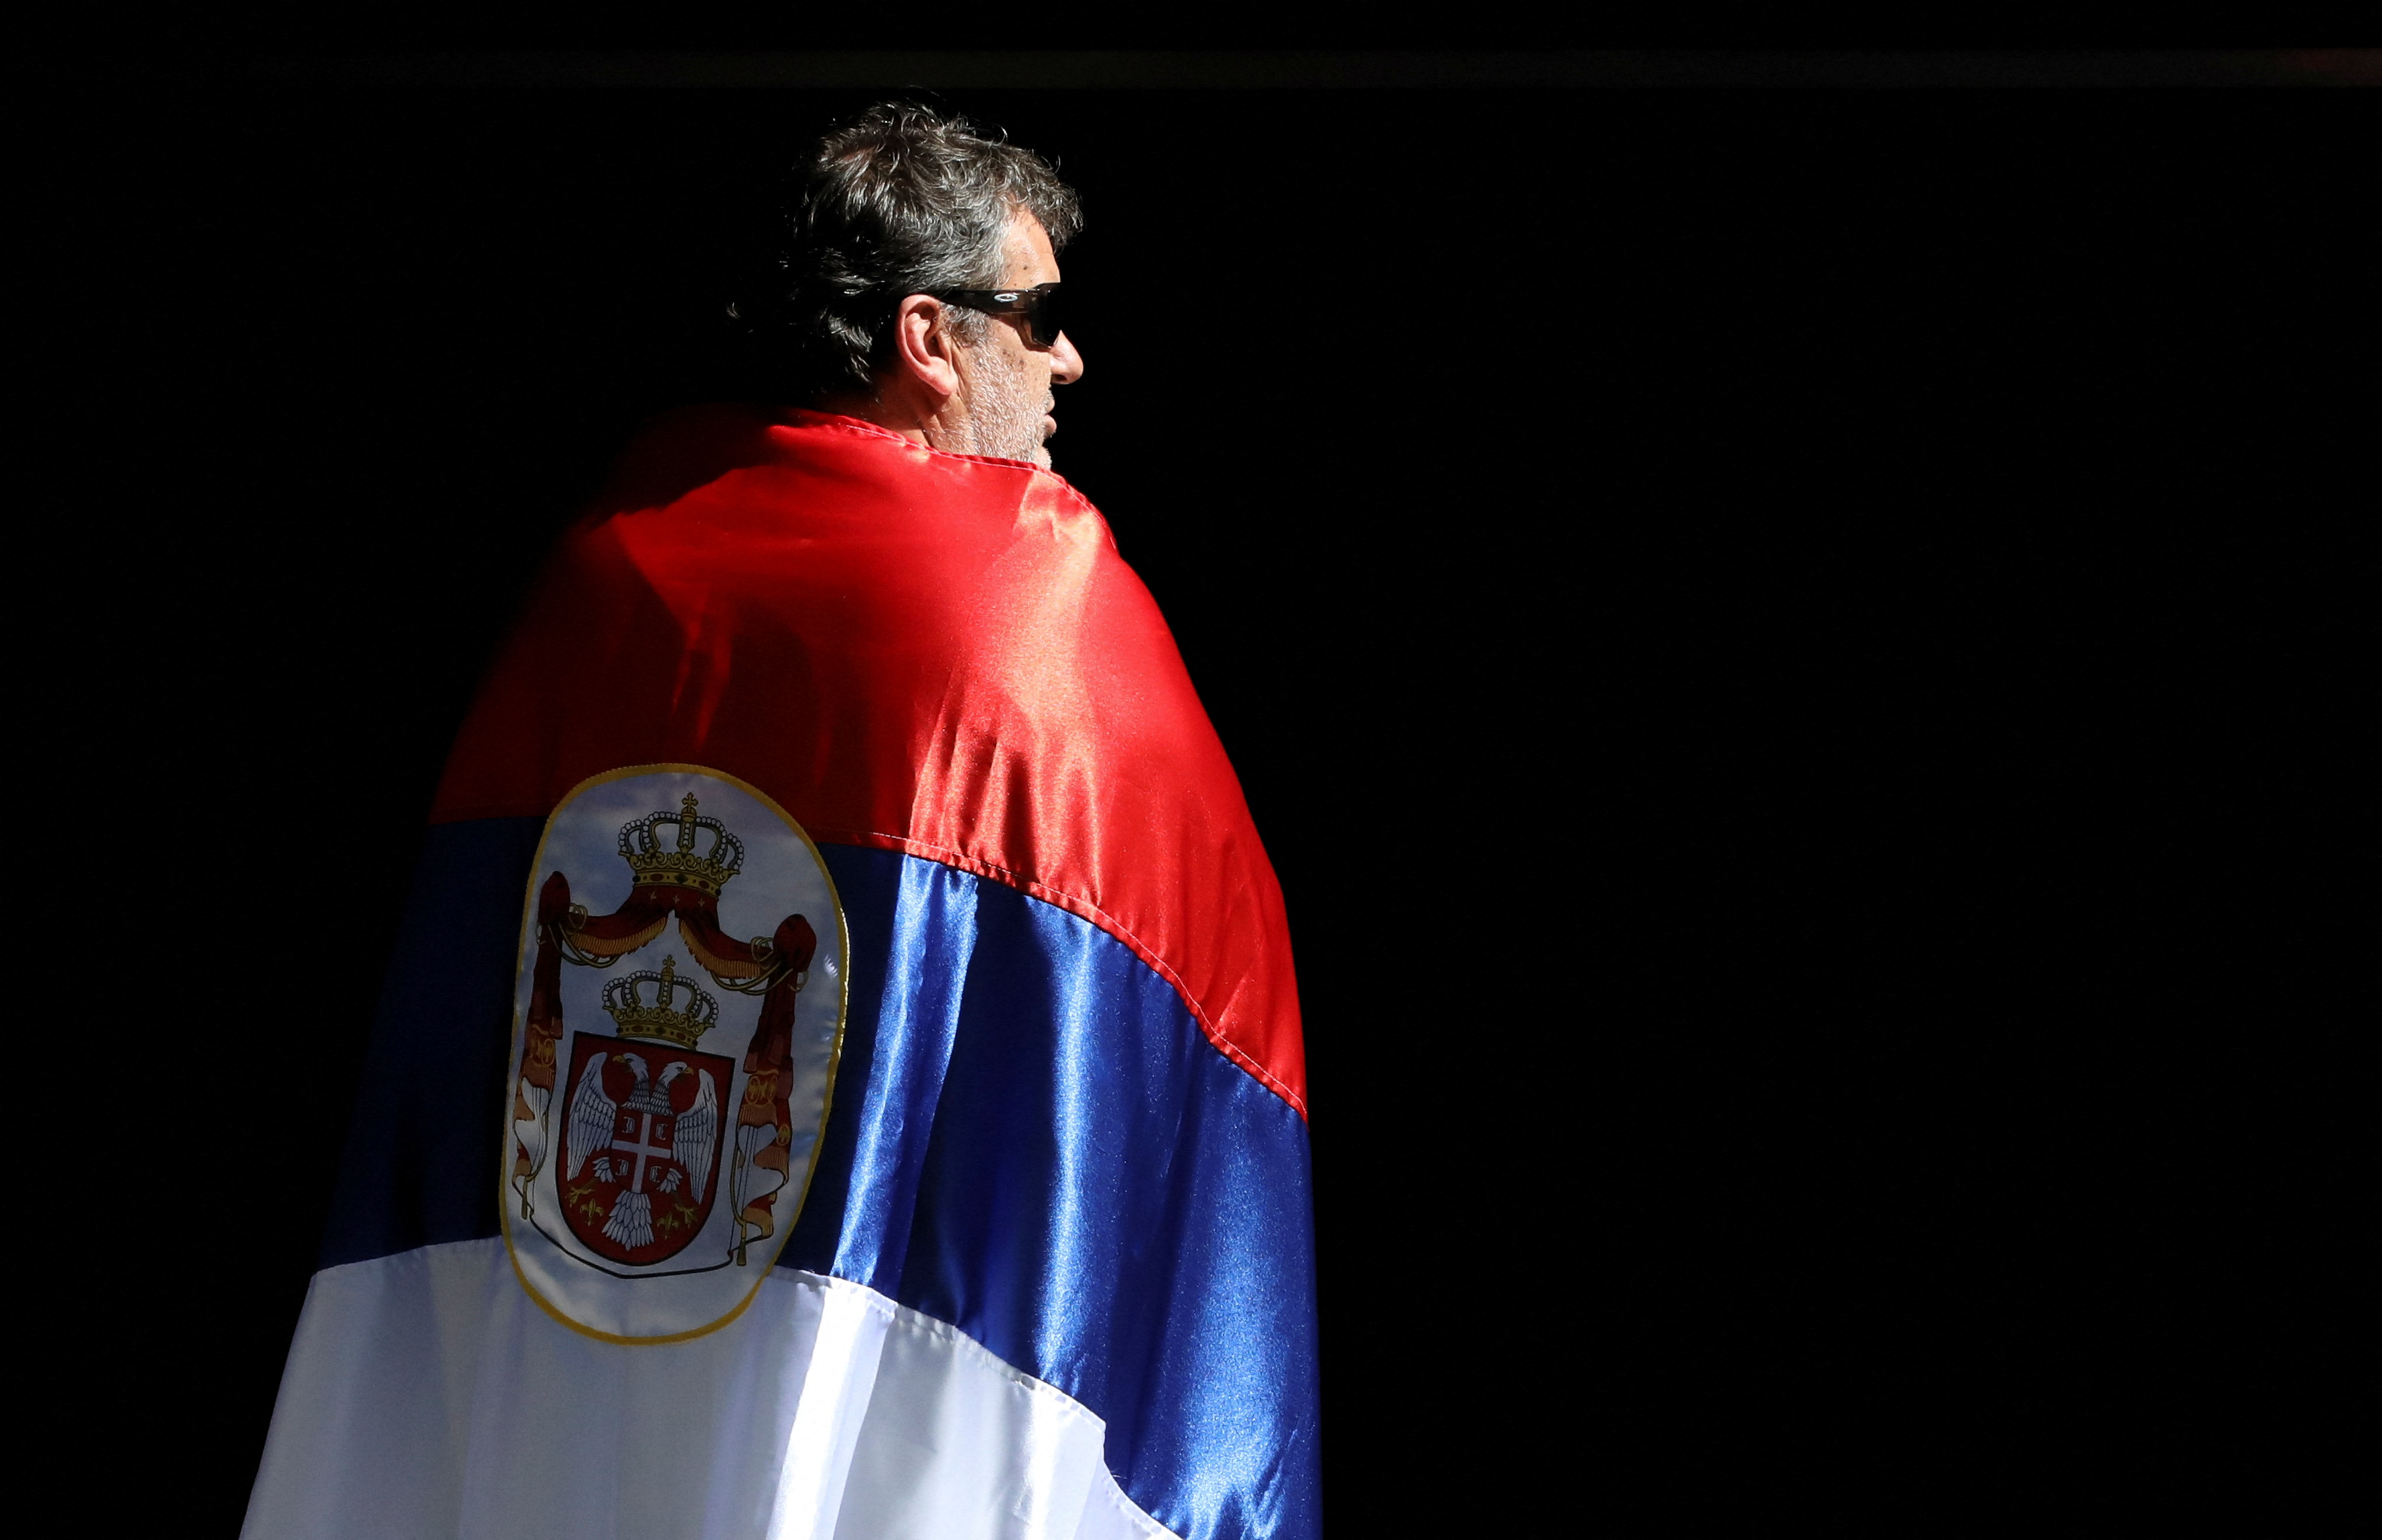 En pocas horas se conocerá la sentencia definitiva sobre el caso Djokovic